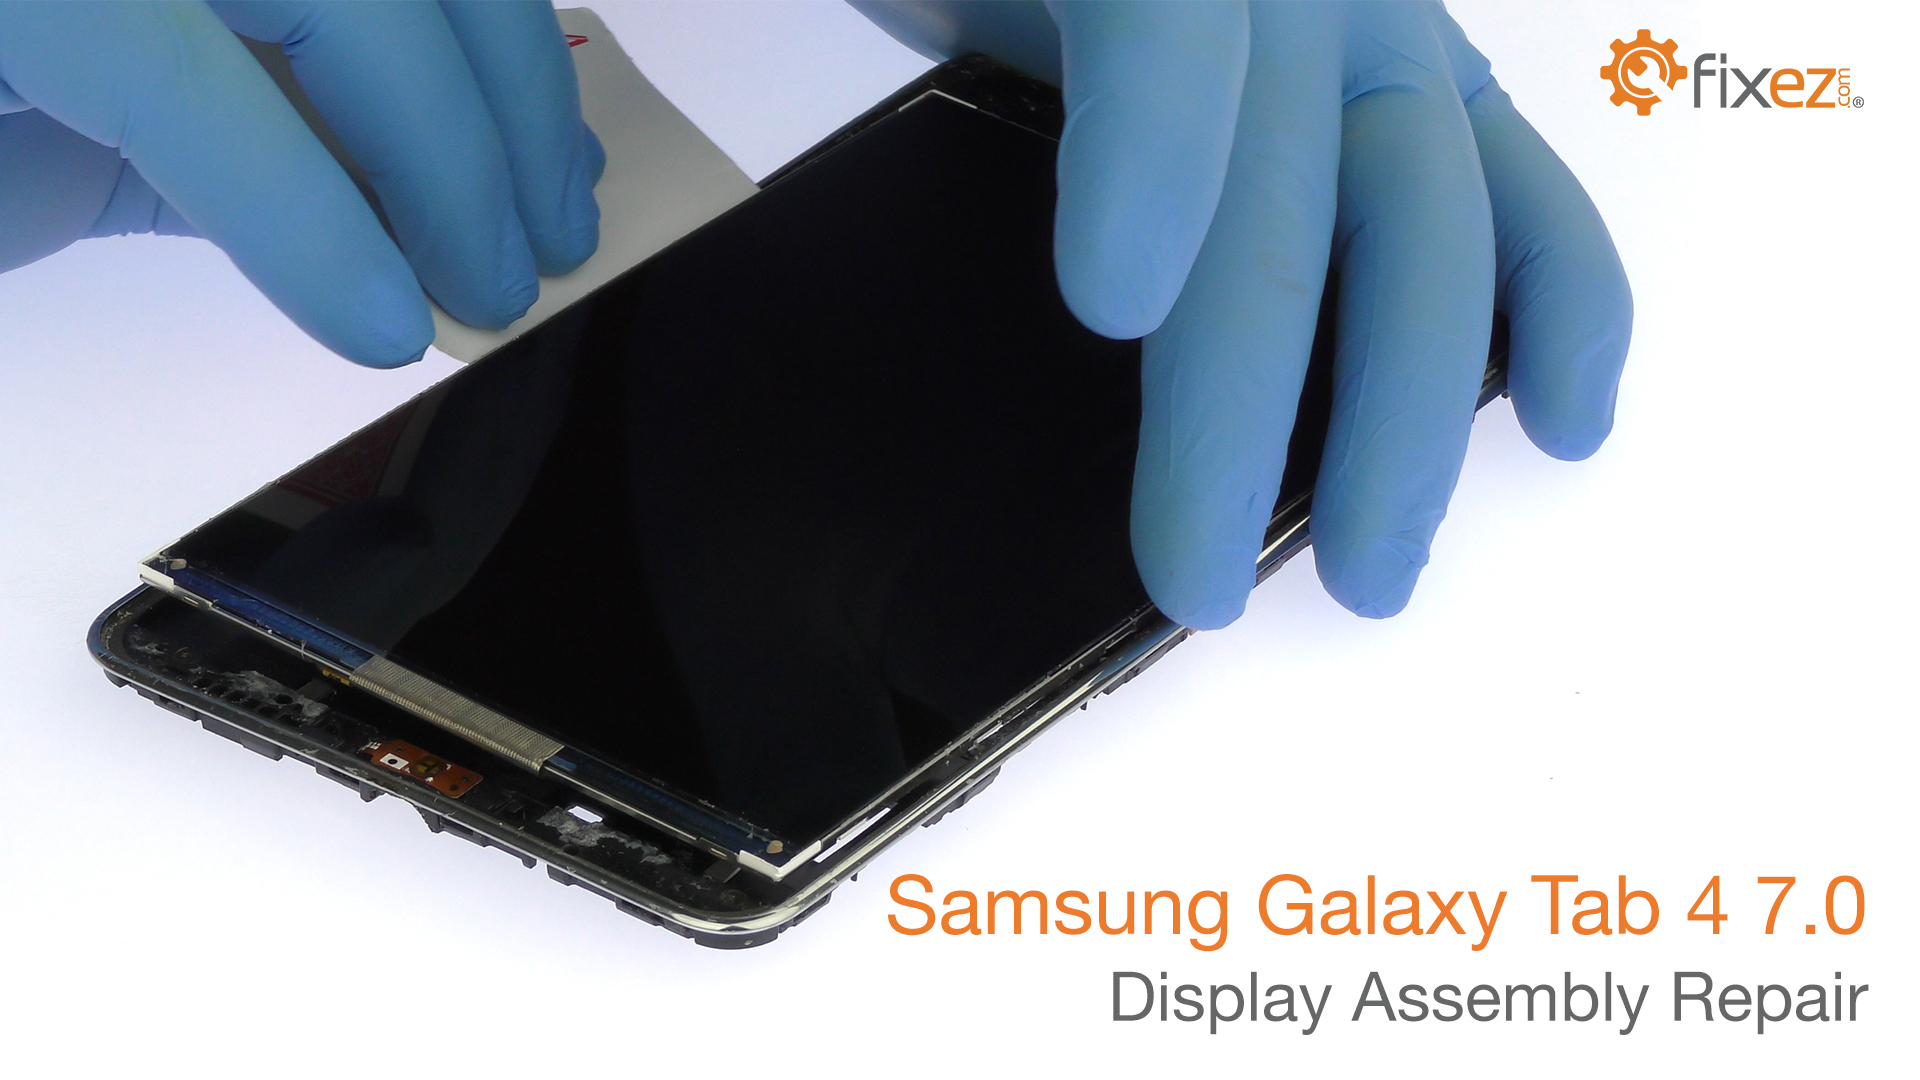 Samsung Galaxy Tab 4 7.0 Display Assembly Repair